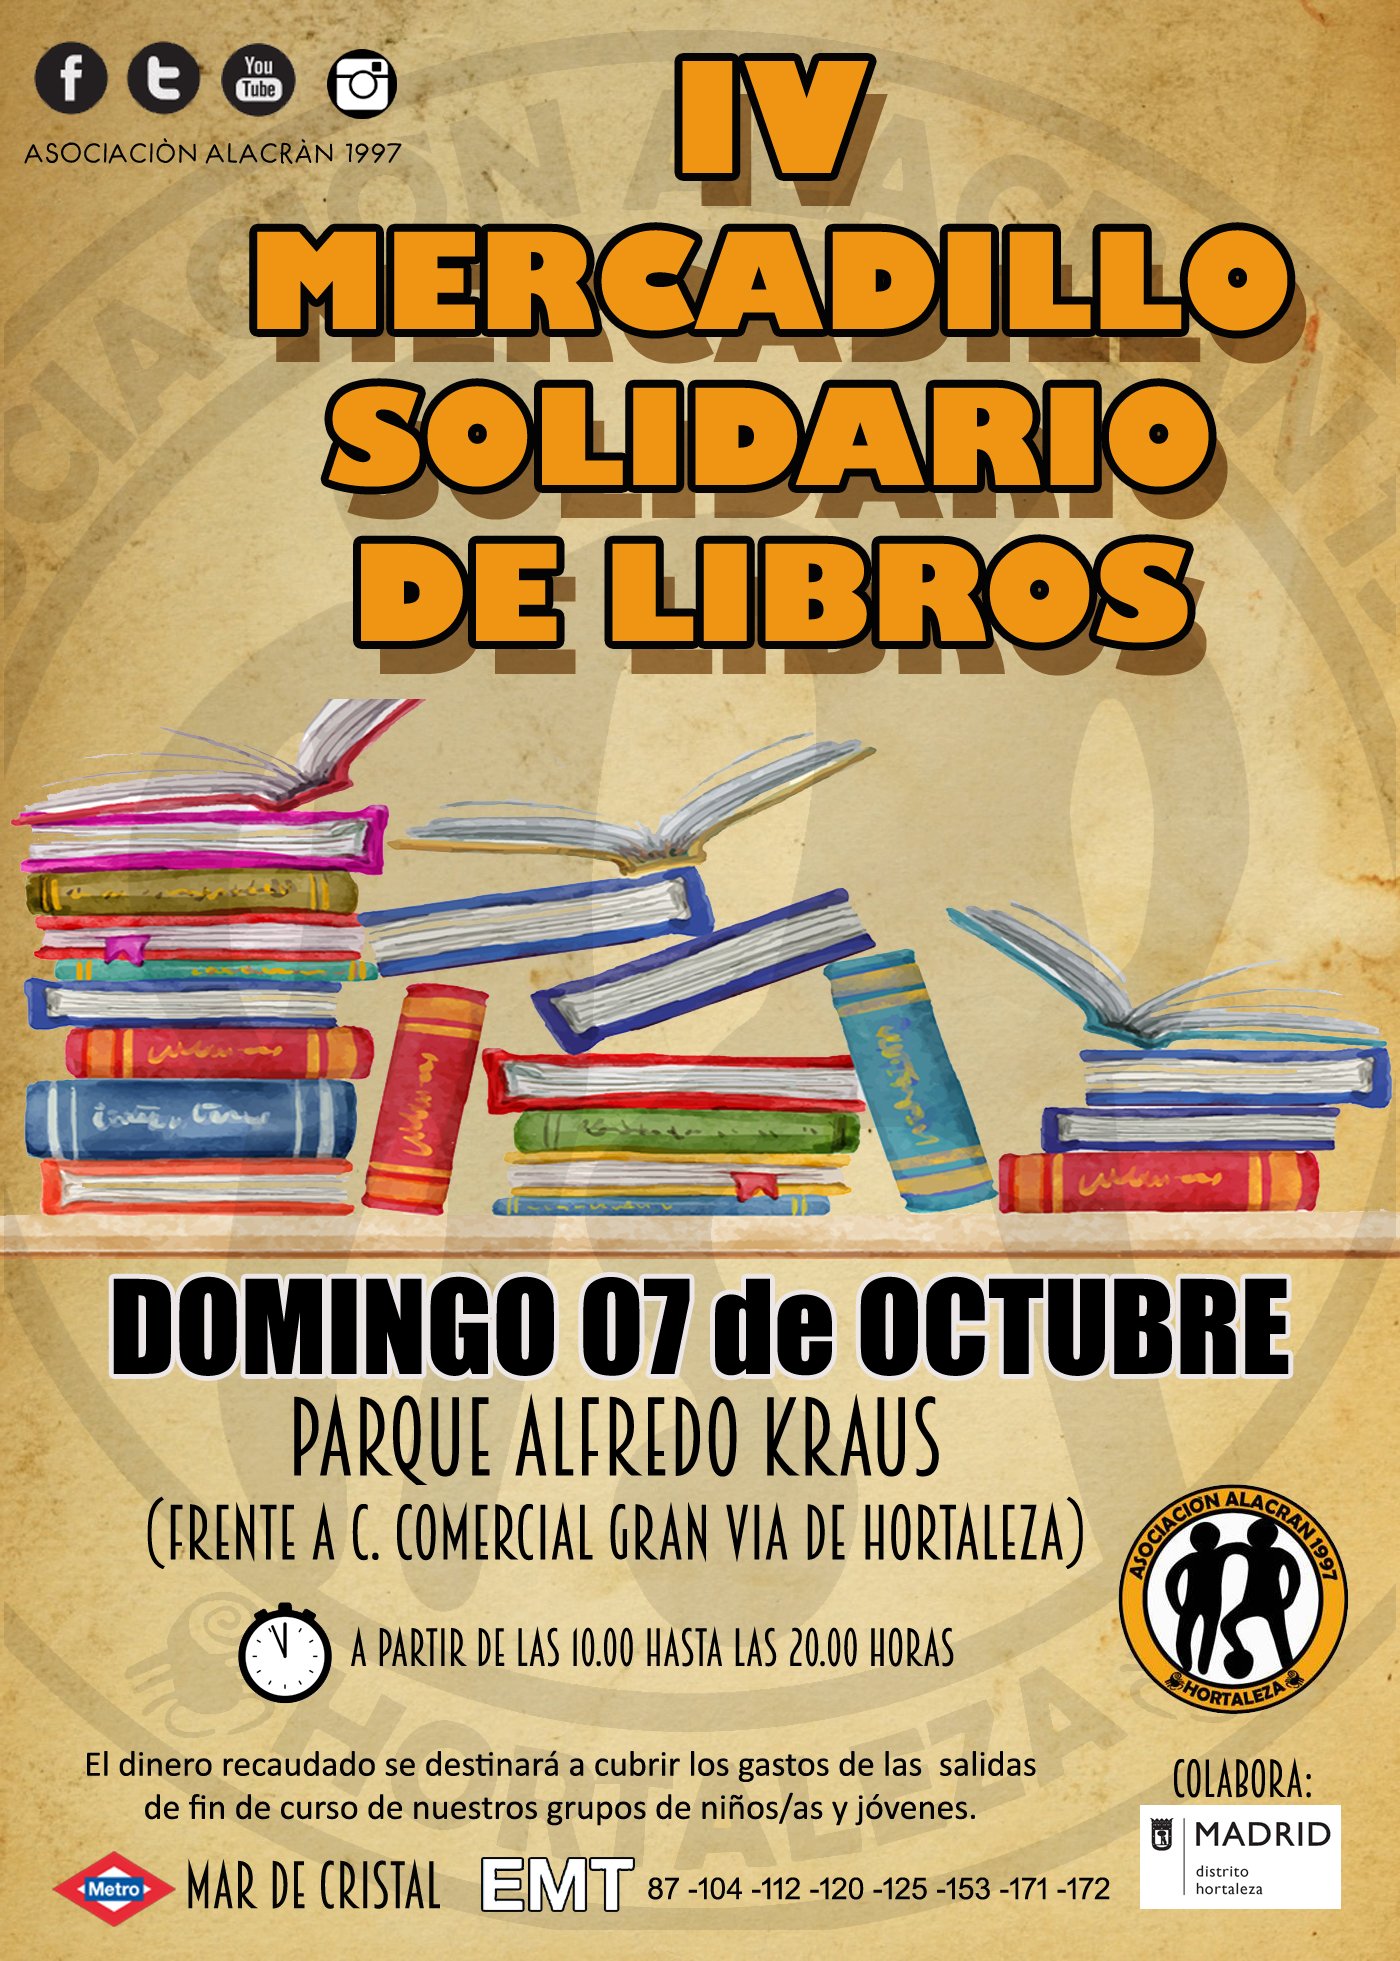 Mercadillo Solidario de Libros en el Parque Alfredo Kraus